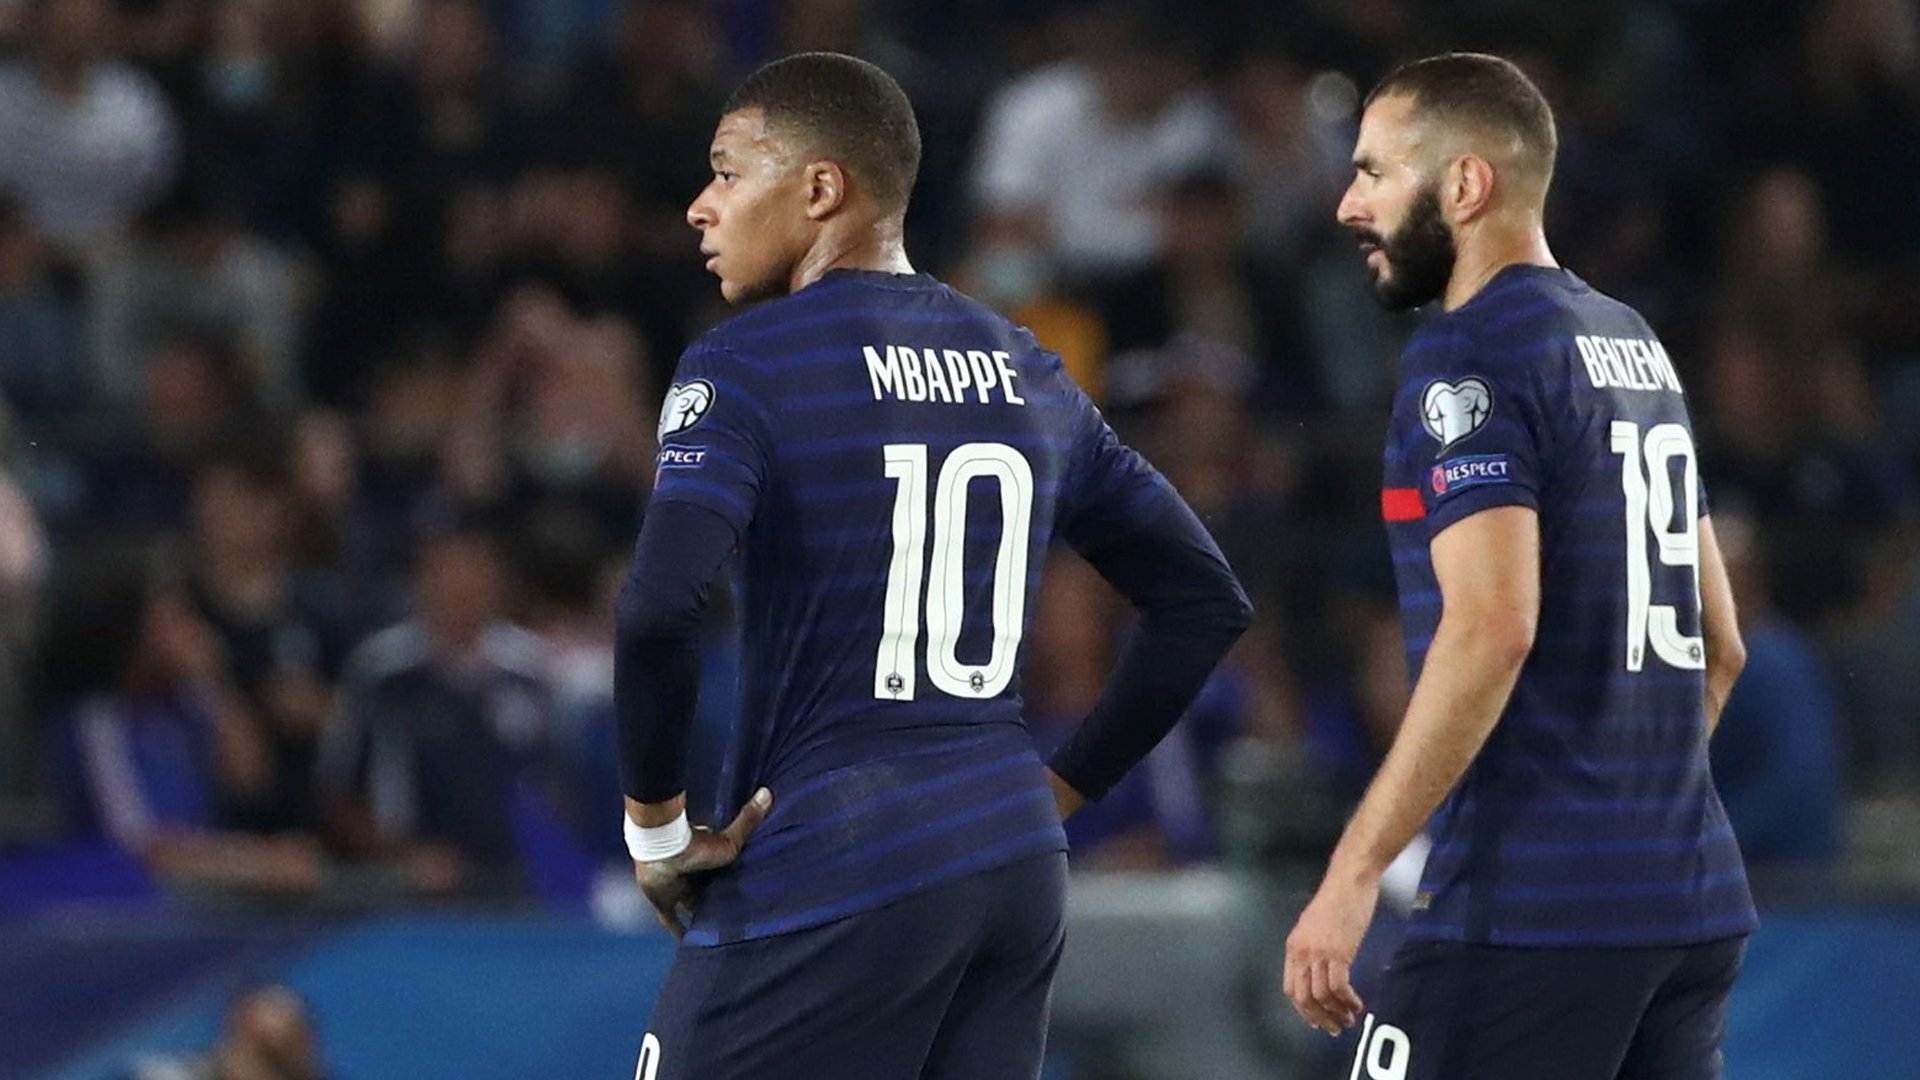 Le duo Mbappé – Benzema frappe fort en Equipe de France, la statistique qui confirme